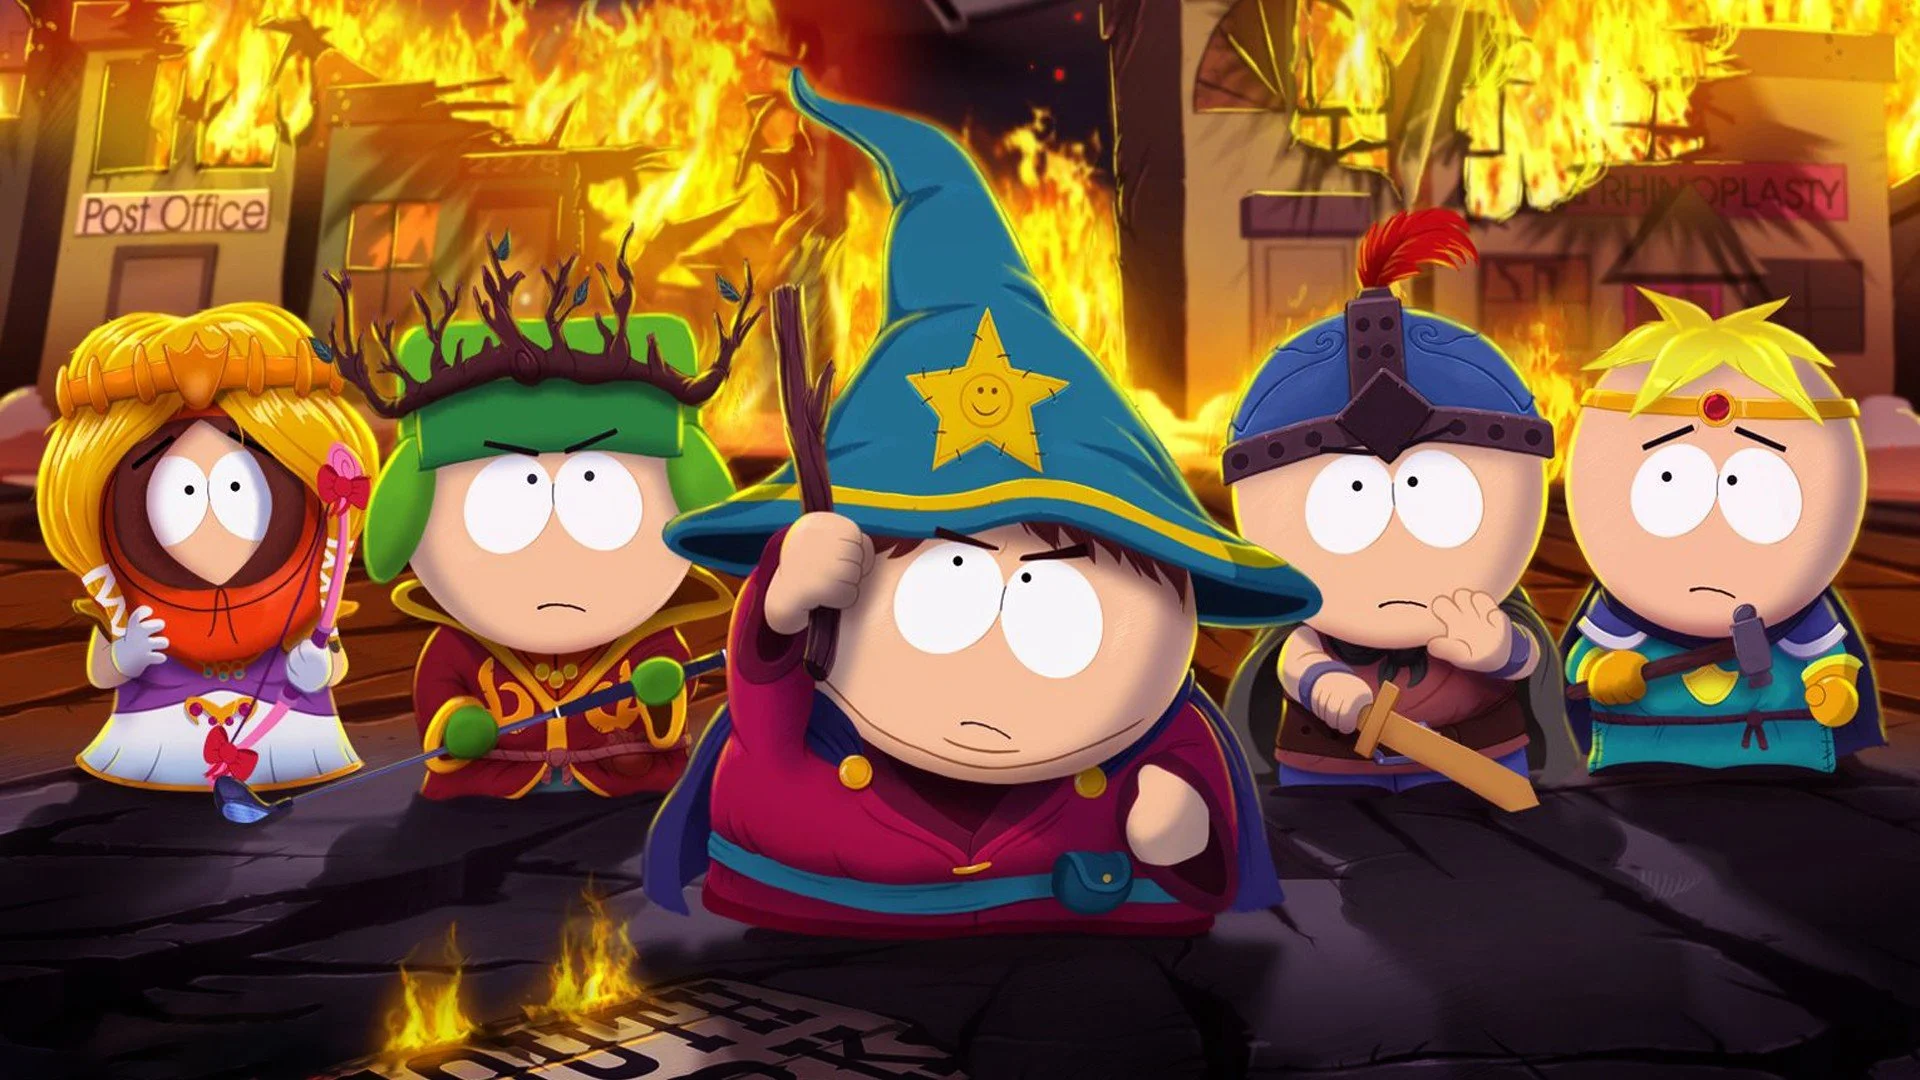 Видеоигра South Park: The Stick of Truth вышла отличной, поэтому многие уже ждут South Park: The Fractured but Whole (звучит как  butthole, то есть треснувший анус, вполне в духе шоу)